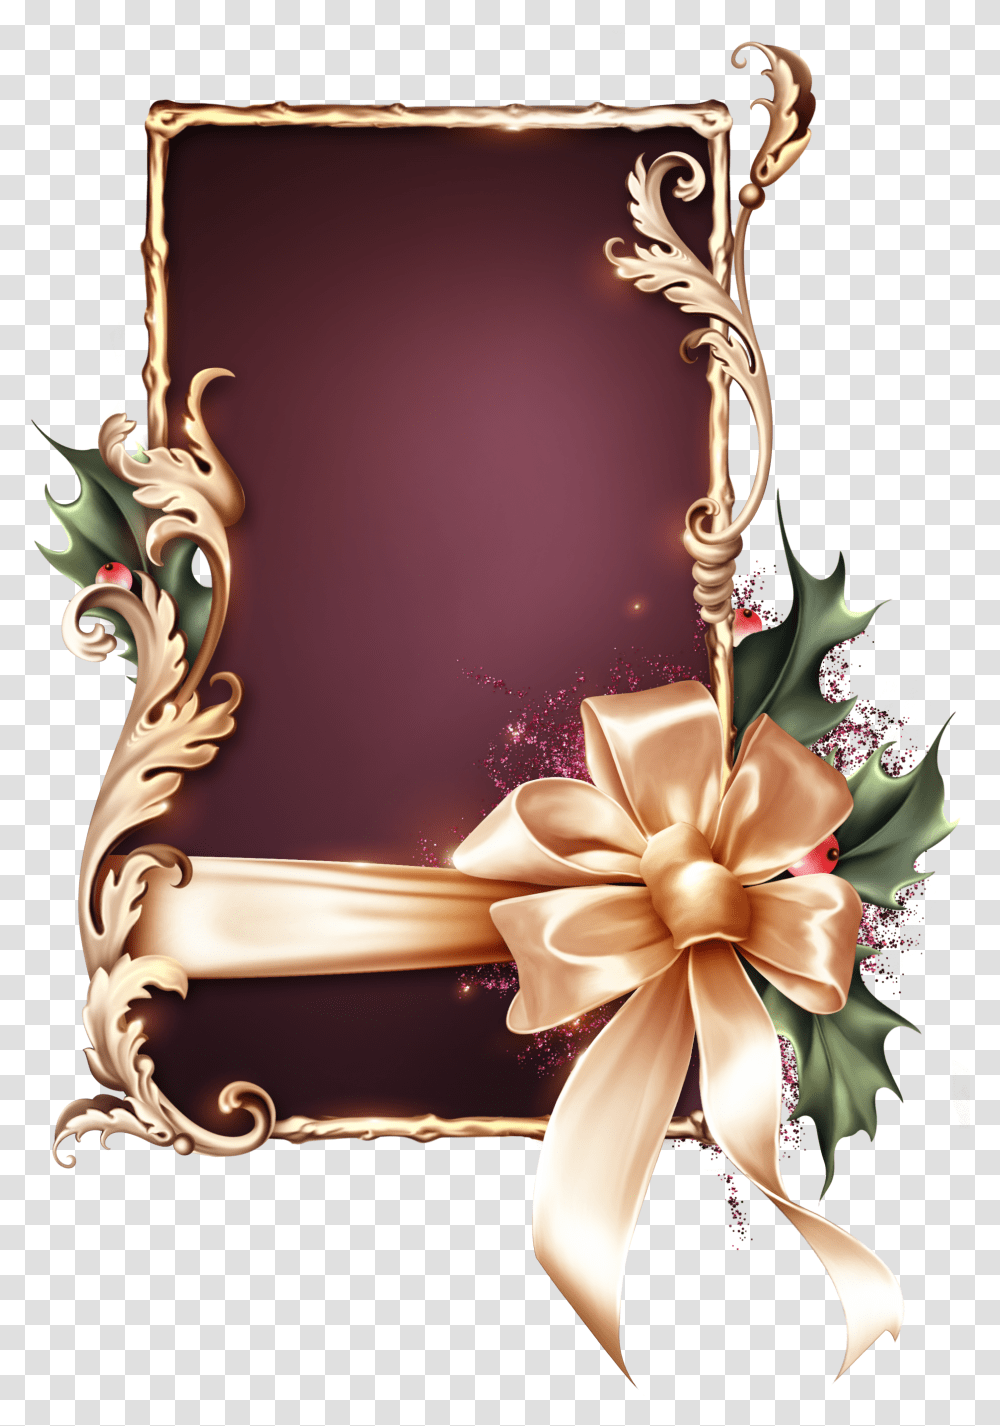 Ornate Christmas Decor Dividers Christmas Decorations Bom Dia Voce Merece Ter Um Dia Perfeito Transparent Png